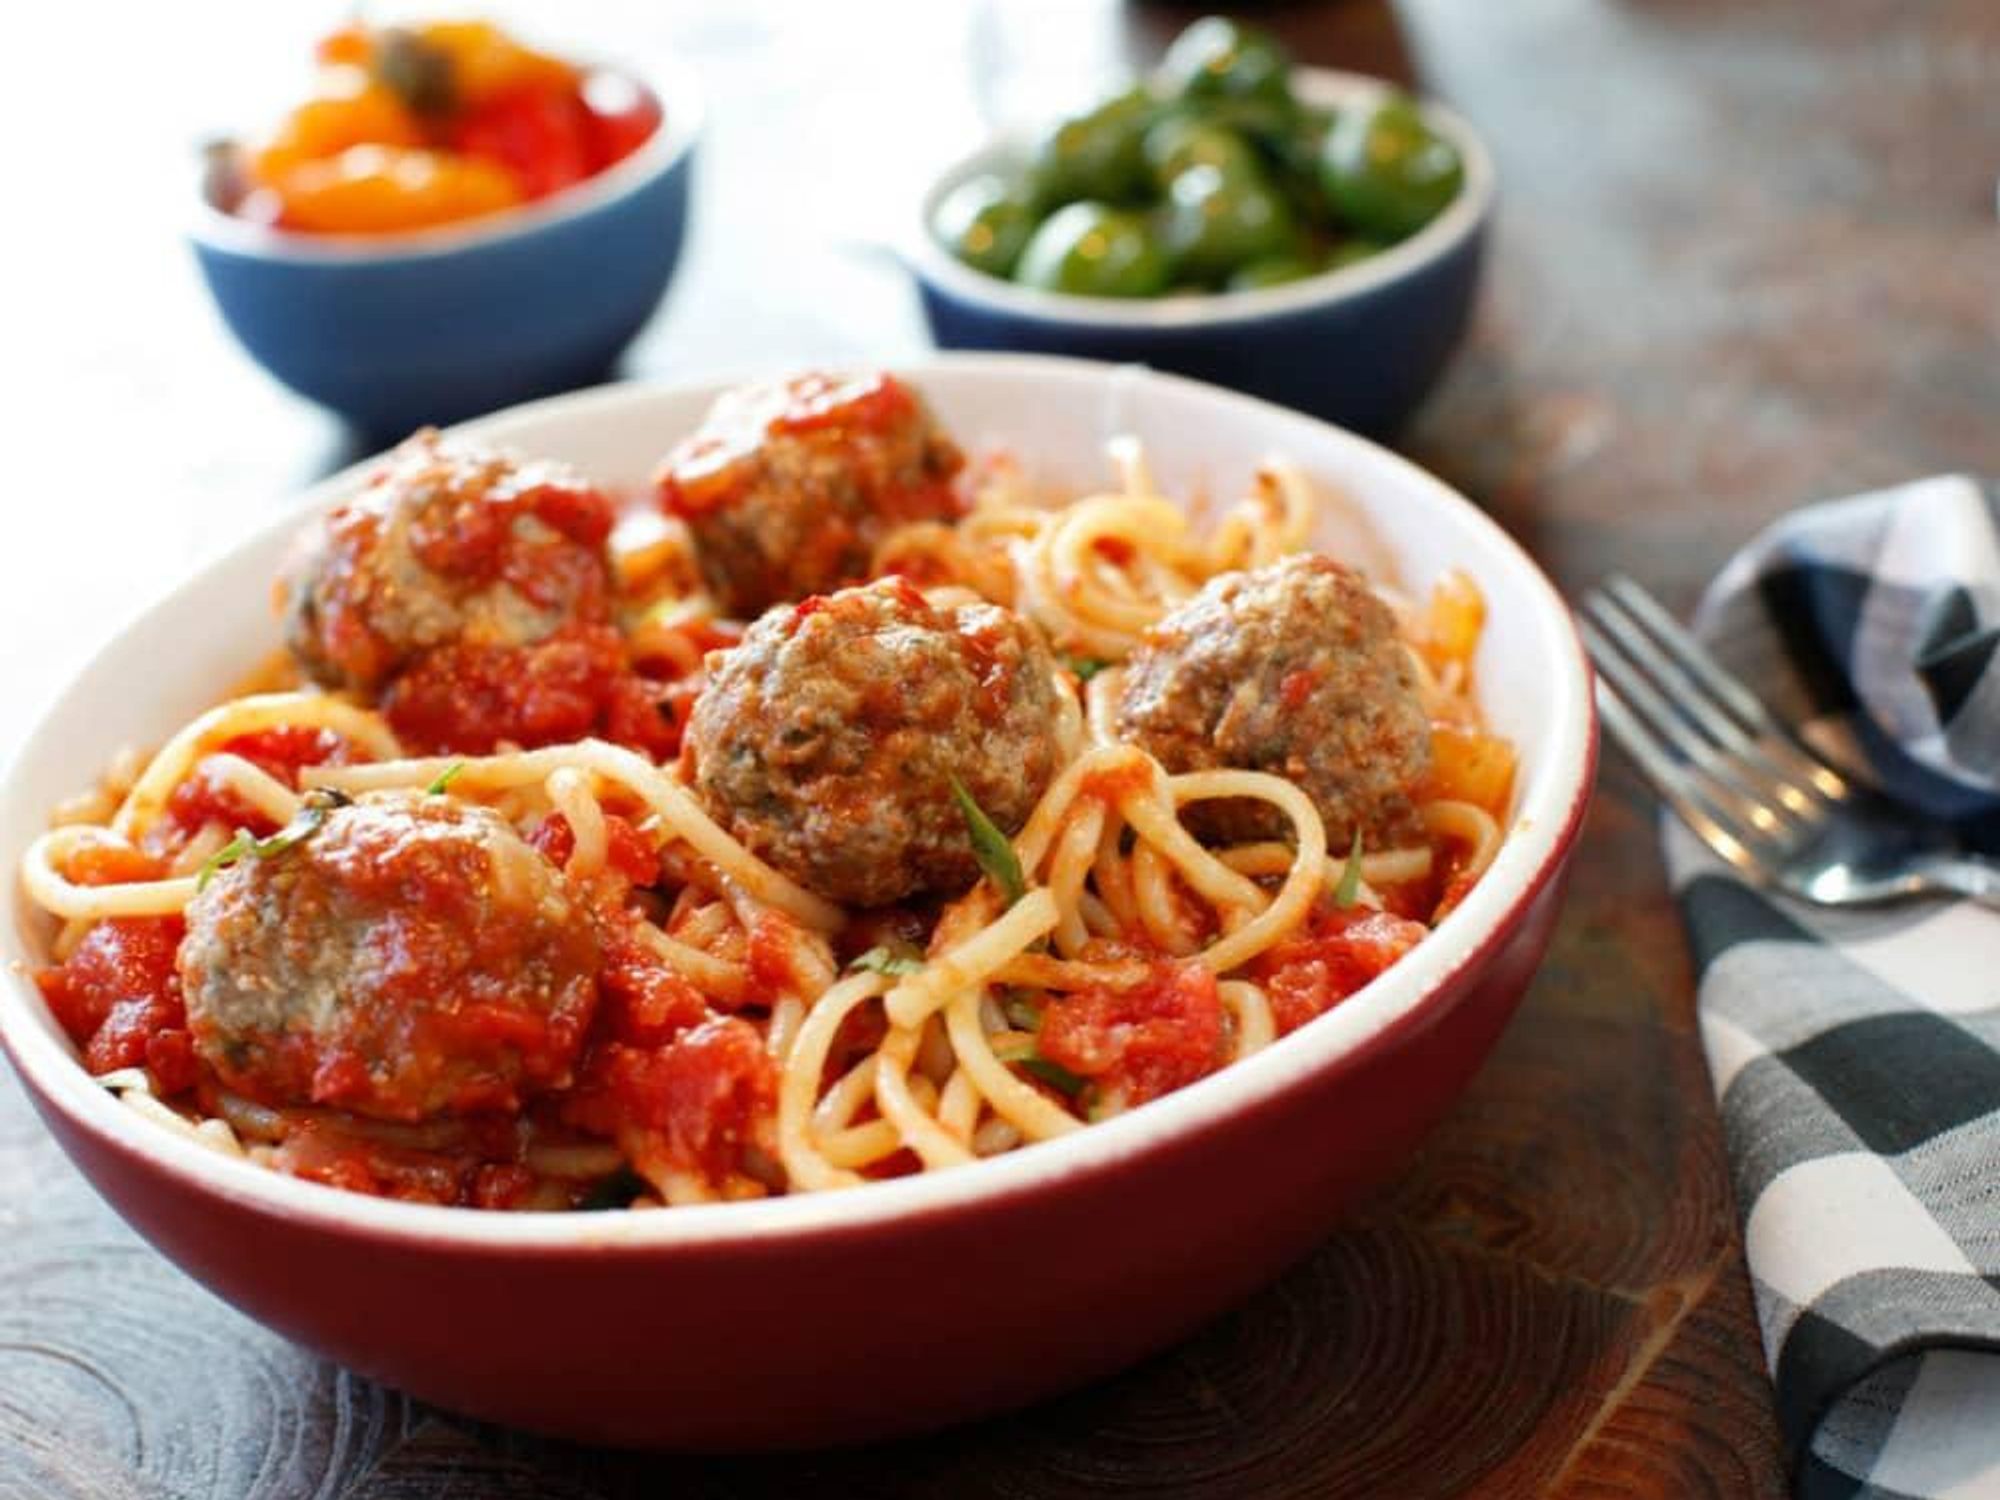 North Italia Spaghetti and meatballs